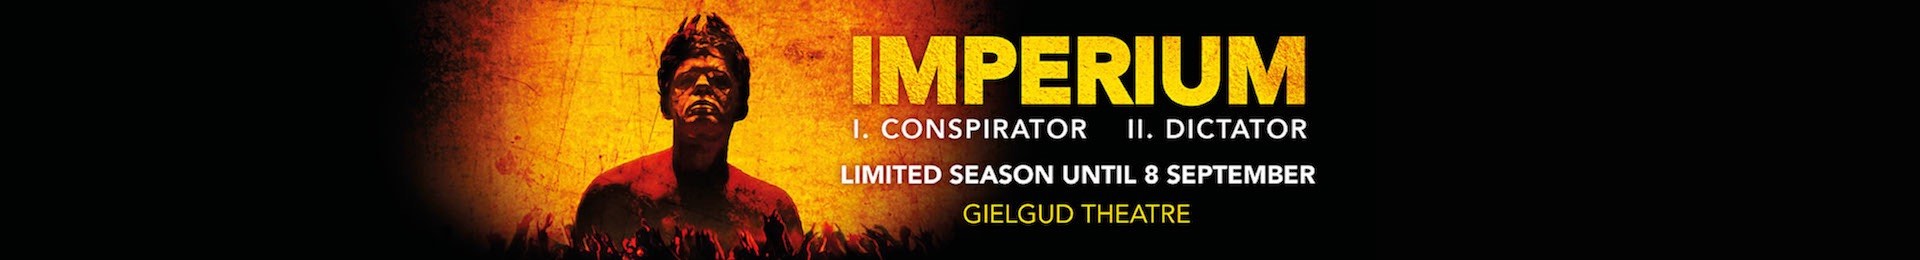 Imperium II: Dictator banner image